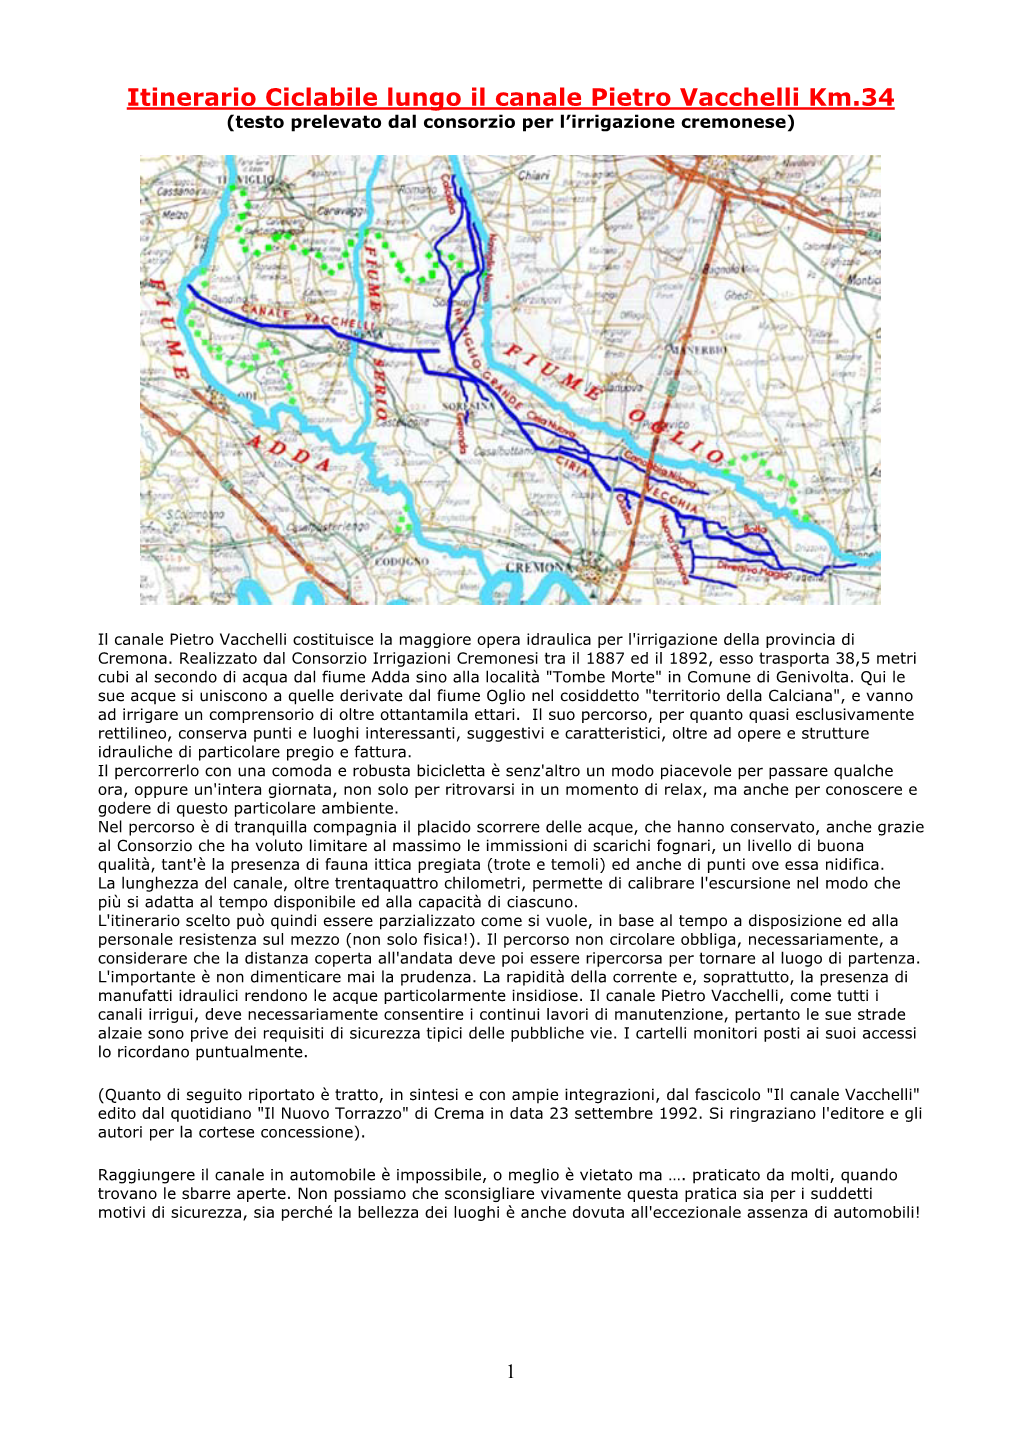 Itinerario Ciclabile Lungo Il Canale Pietro Vacchelli Km.34 (Testo Prelevato Dal Consorzio Per L’Irrigazione Cremonese)